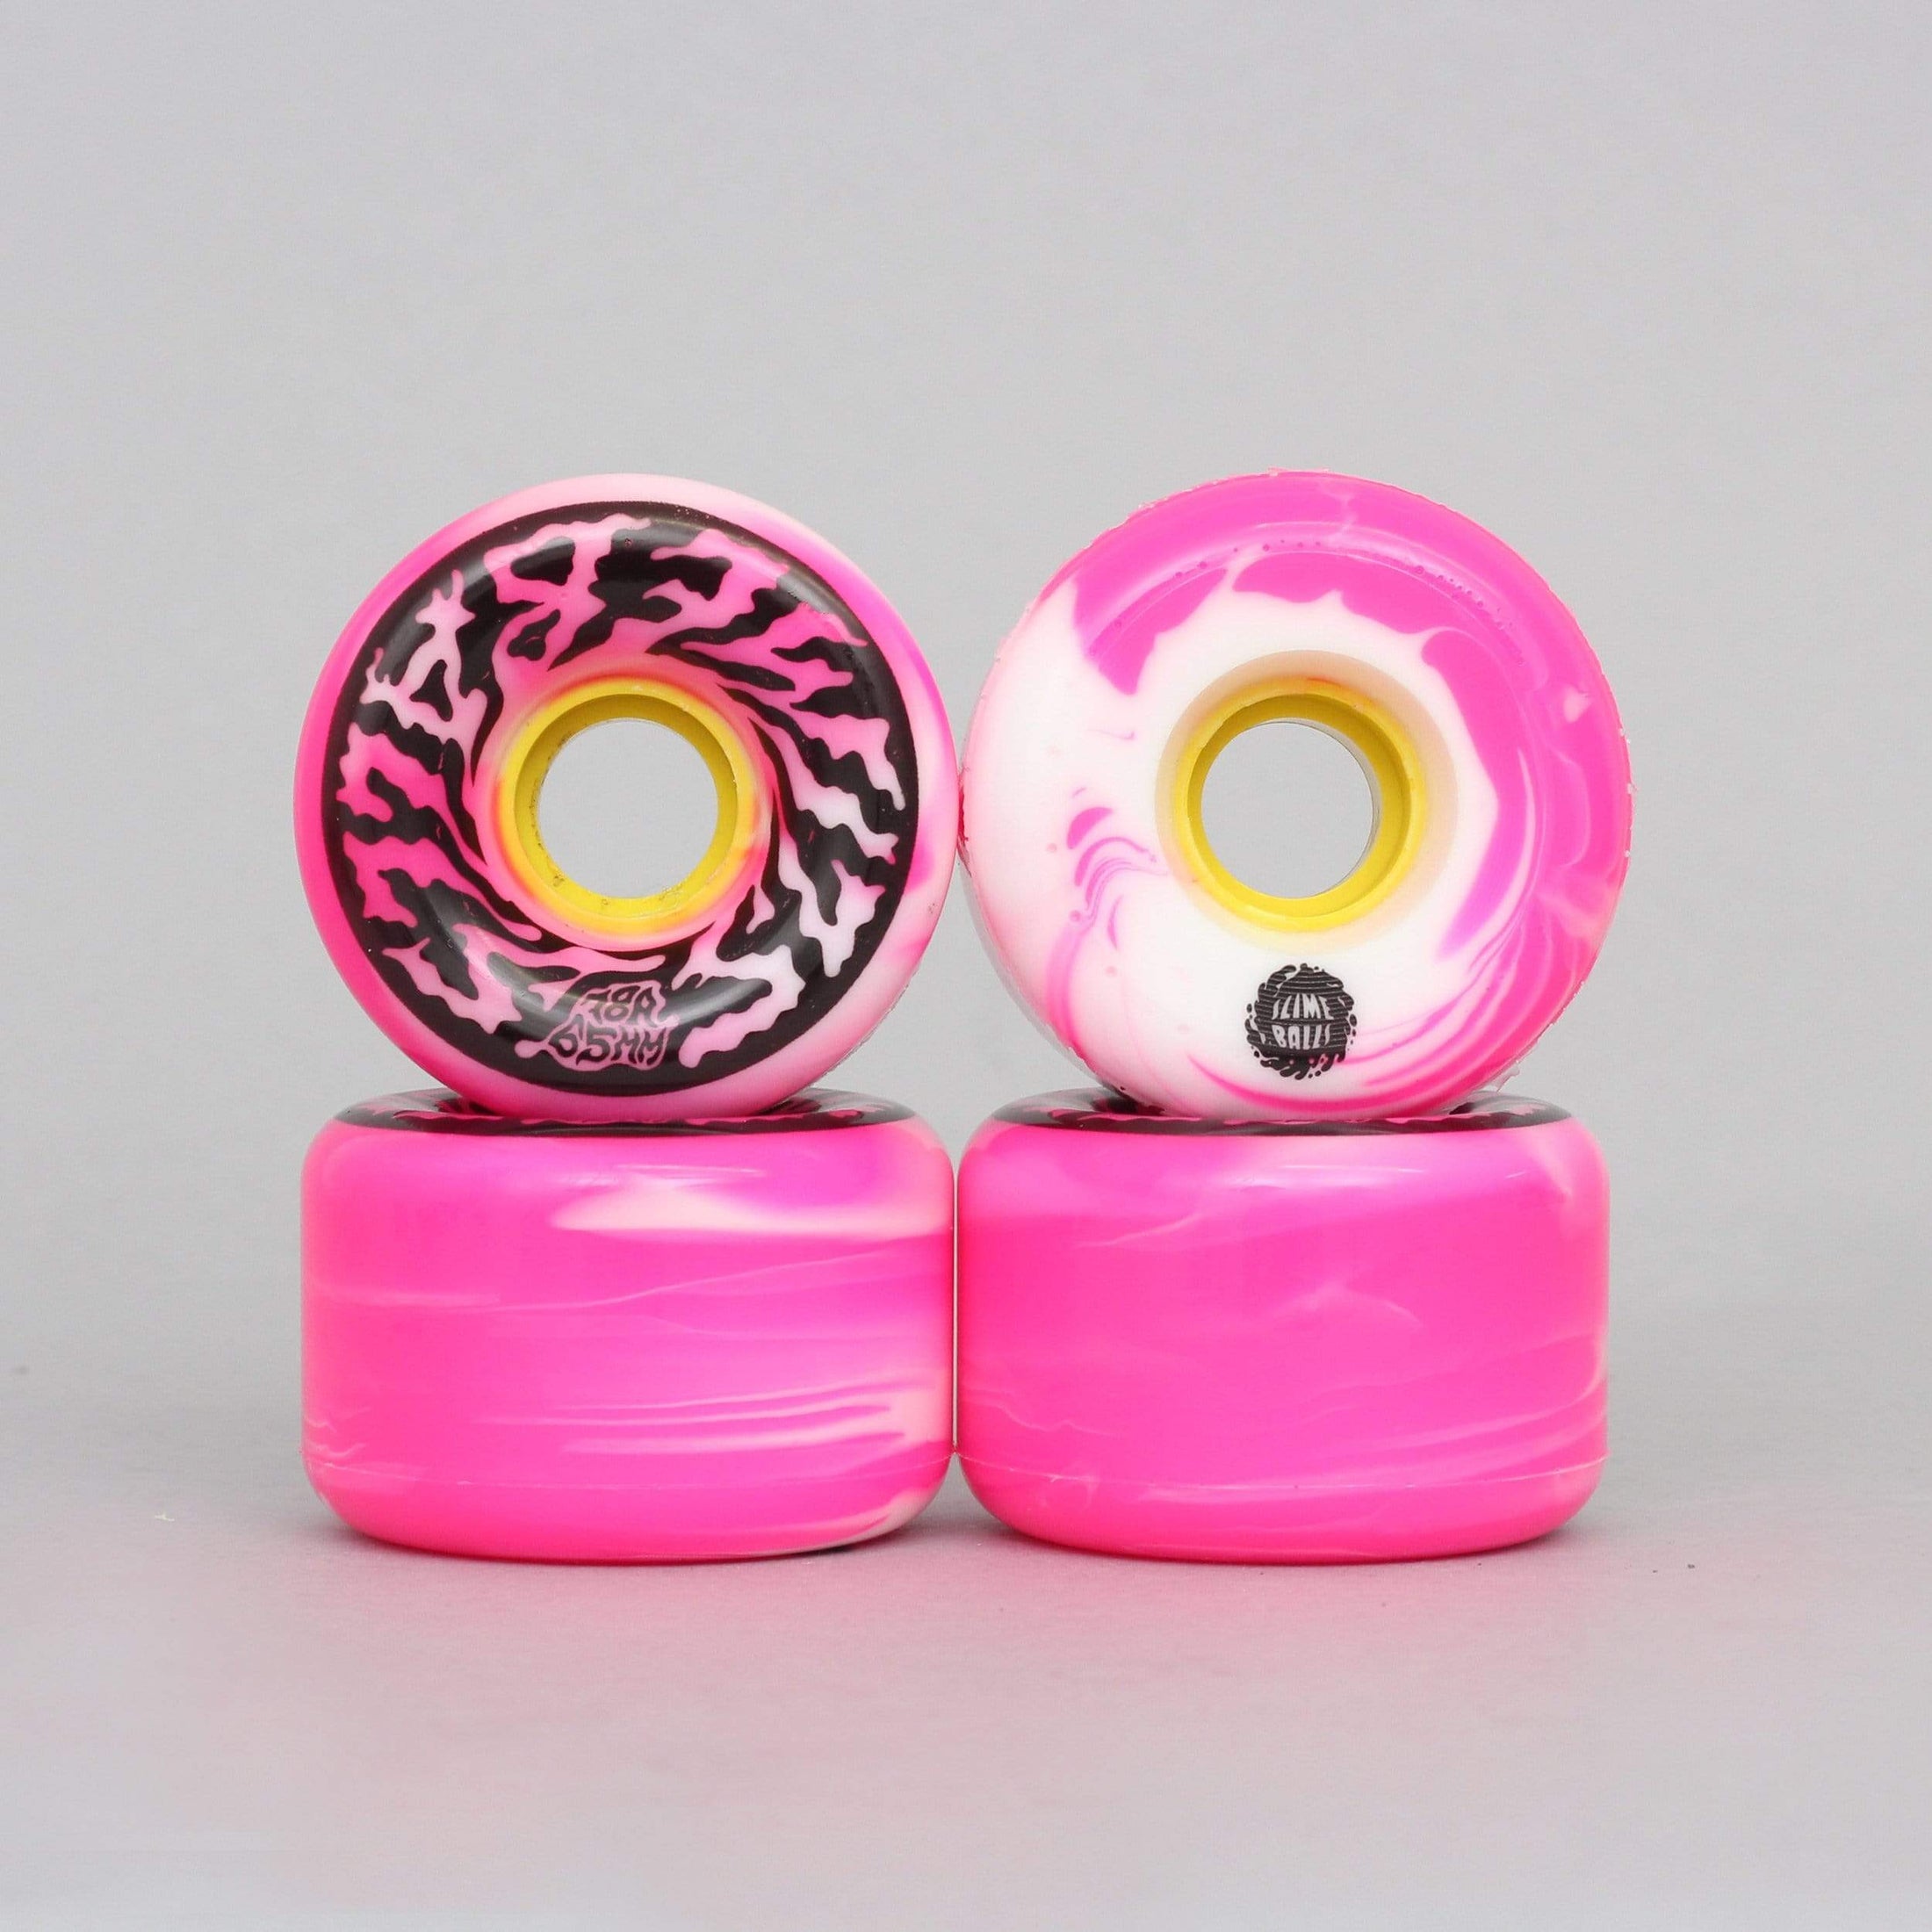 Santa Cruz 65mm 78A Slime Balls Swirly Swirl Skateboard Wheels Pink / White